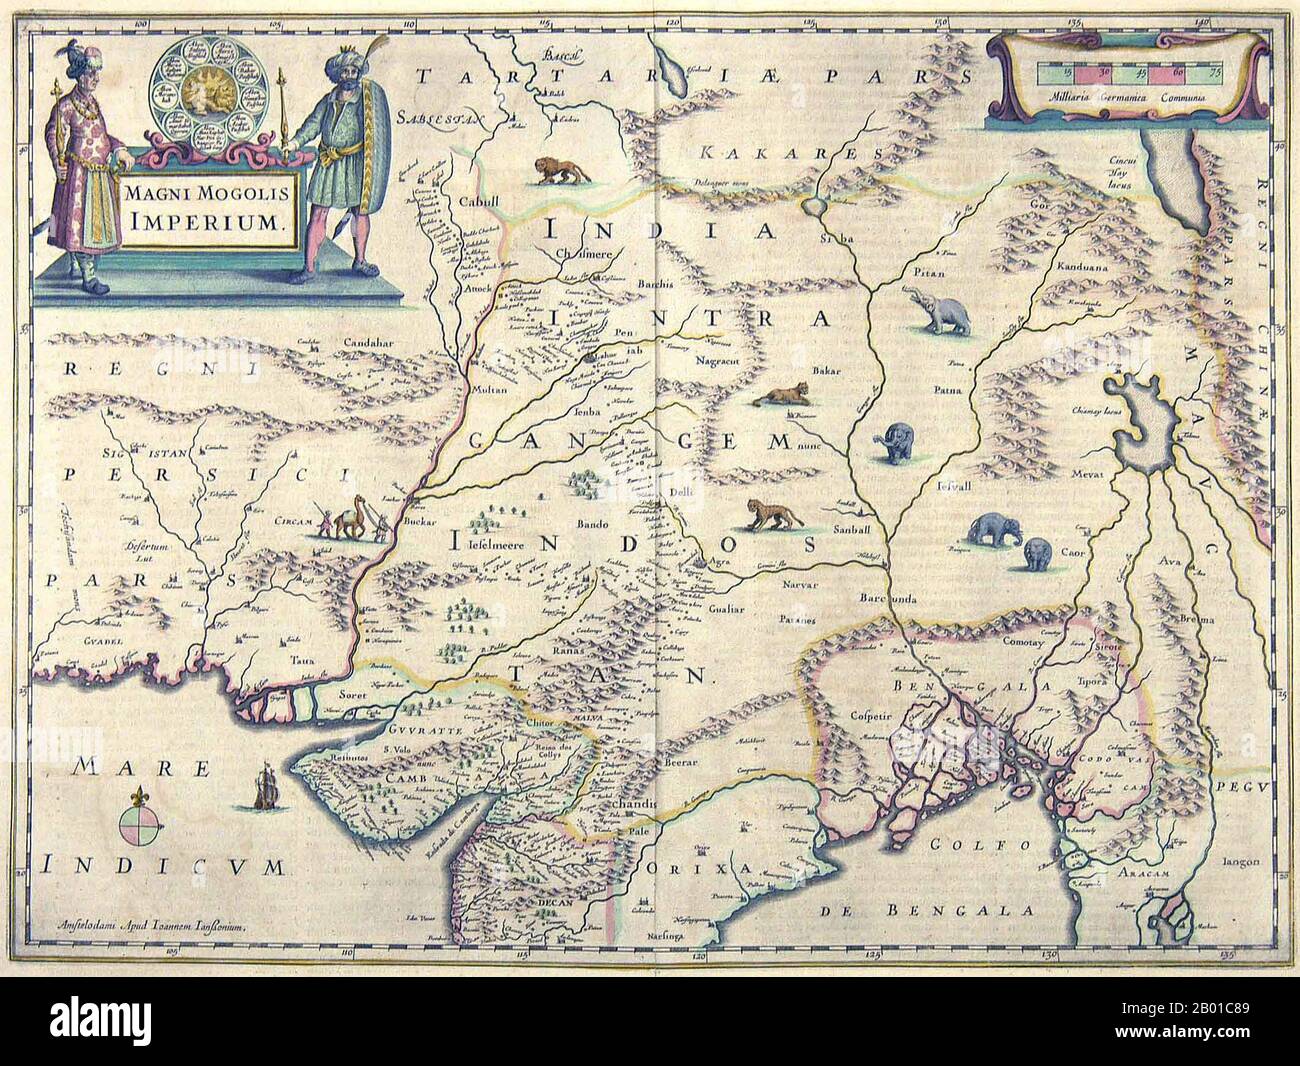 Asia: 'Magni Mogolis Imperium' o 'il Grande Impero Moghul'. Mappa di Willem Blaeu (1571-1638) & Joan Blaeu (1596-1673), Amsterdam, 1648 Una celebre ed elegante mappa di Willem e Joan Blaeu dell'Impero Moghul. La mappa mostra le Gange, Bengala, Delhi, Lahor, Cashmere & Kabul; le decorazioni includono una cartouche ornata, galeoni, elefanti e cammelli. Di particolare interesse, ad est dell'Impero Moghul lo specioso 'Chiamay Lacus' o 'Lago Chiang mai' è particolarmente grande ed è rappresentato come la fonte di cinque fiumi principali che si svuotano nella baia del Bengala e nel Mar Cinese Meridionale. Foto Stock